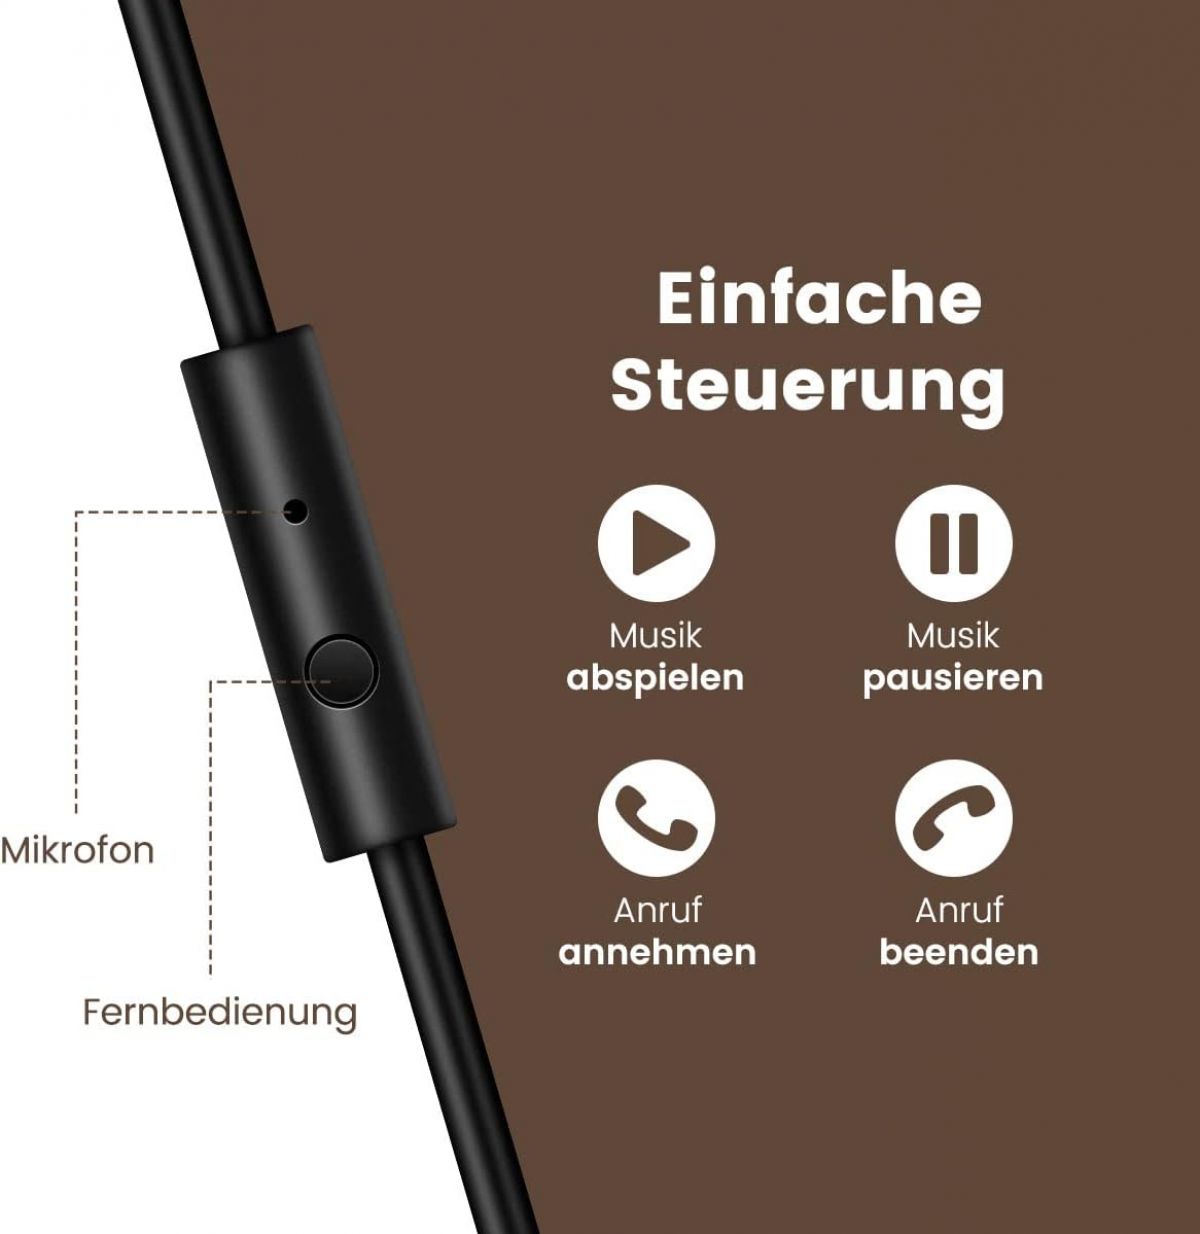 OneOdio kõrvapealsed Bluetooth kõrvaklapi​d